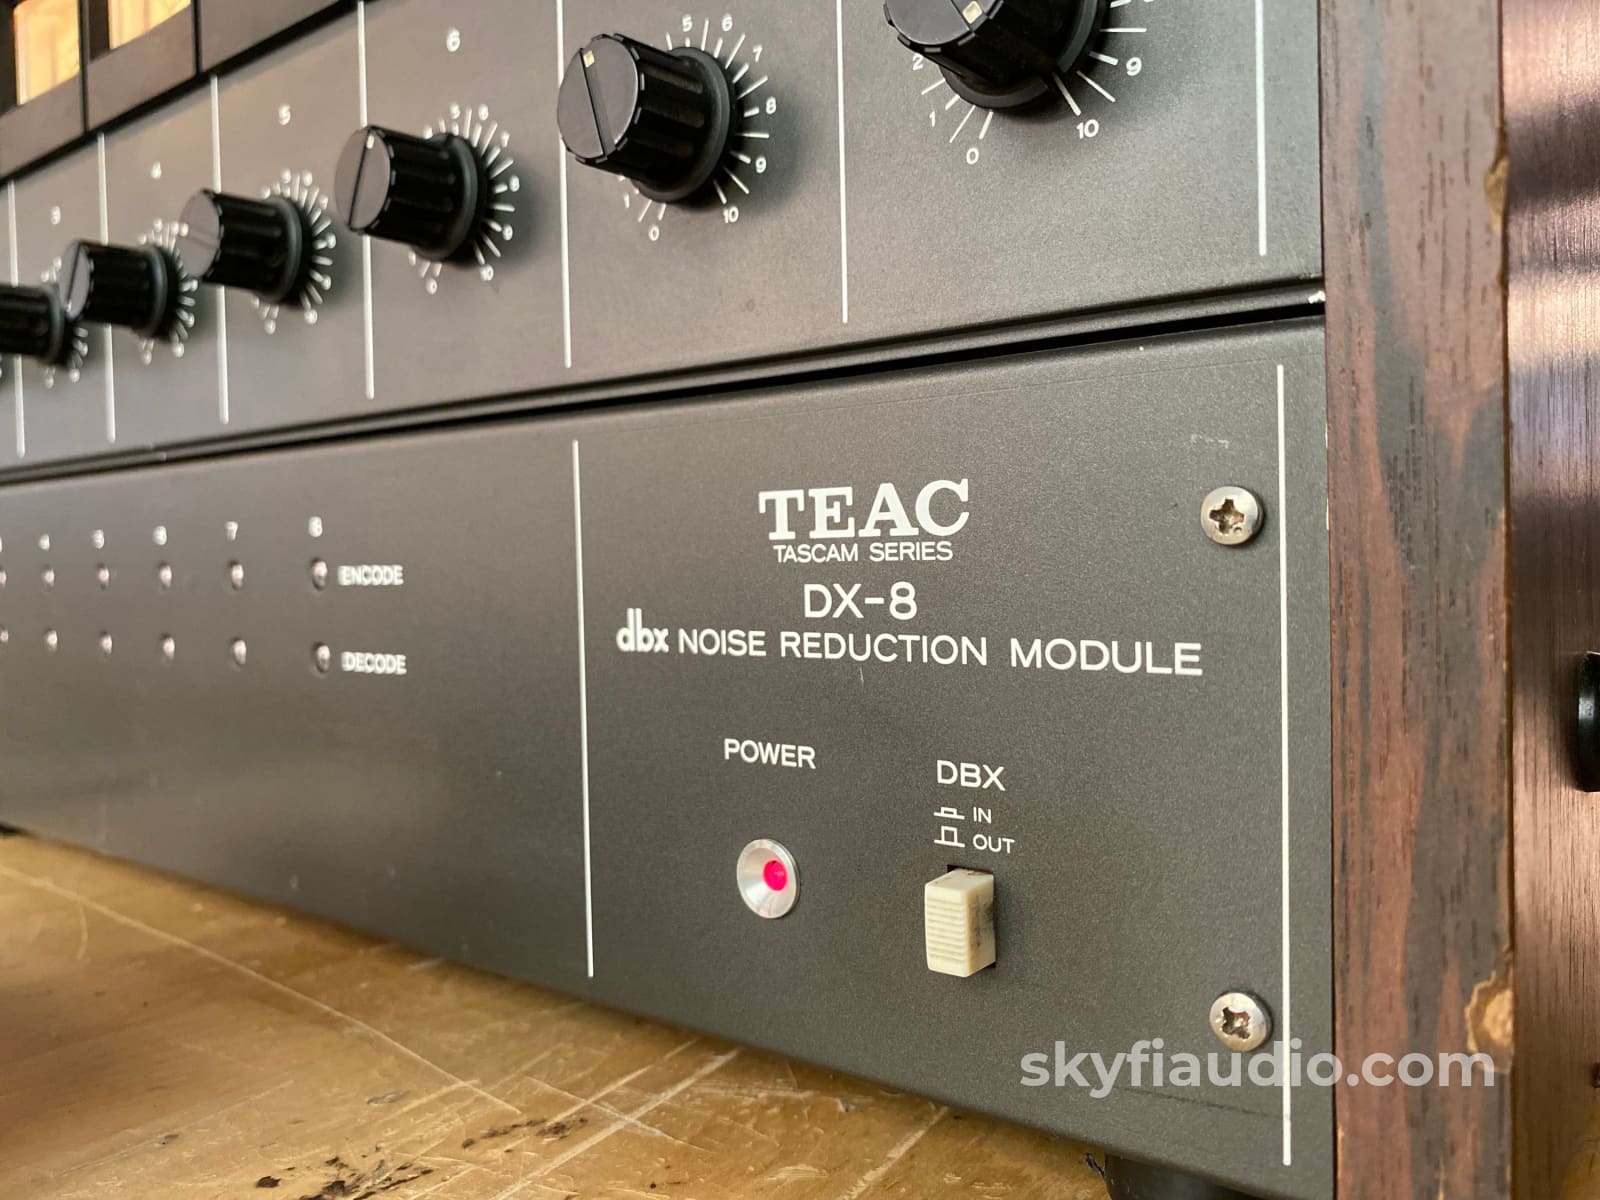 TEAC Tascam 80-8 Series Vintage Reel to Reel w/ DX-8 dbx Module & Remo